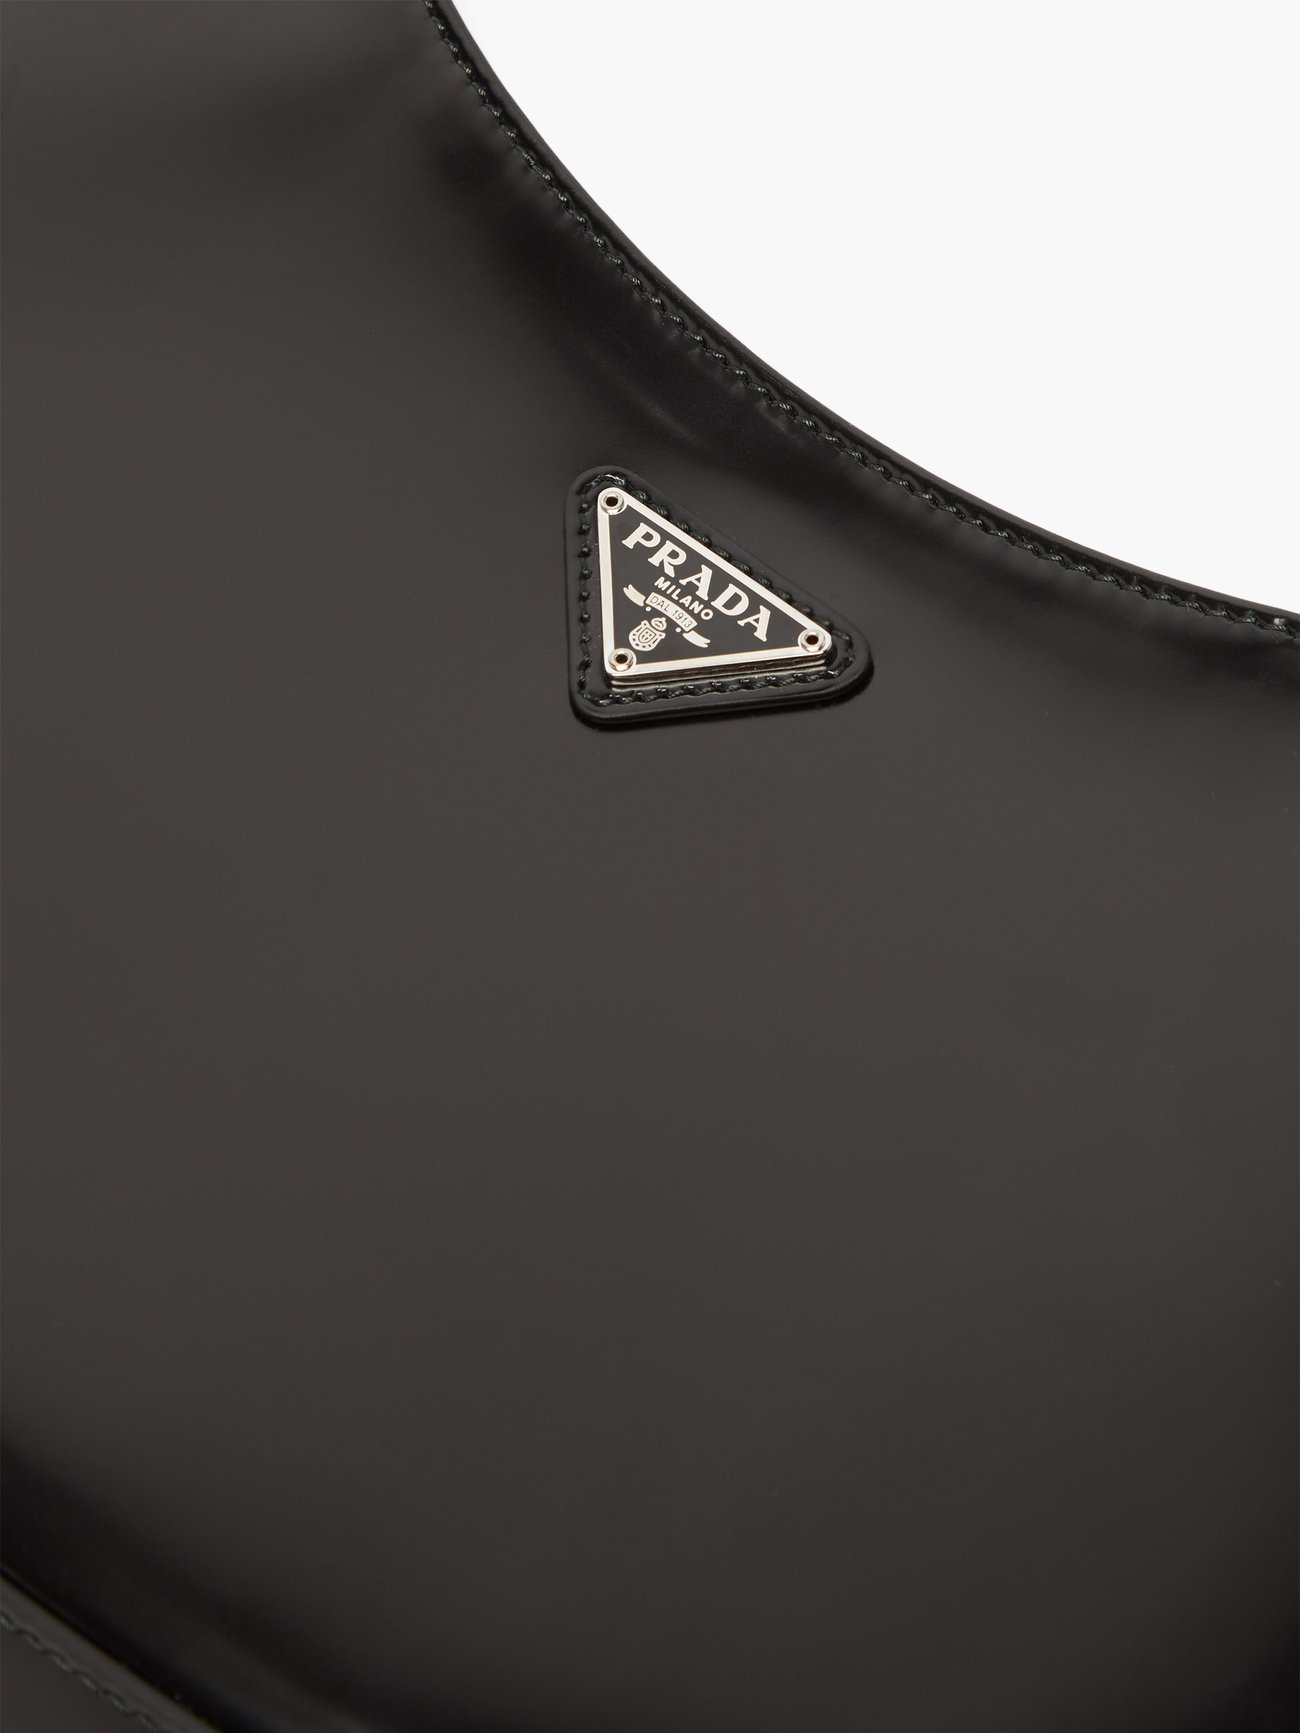 Prada Black Box Calf Leather Cleo Shoulder Bag - Yoogi's Closet